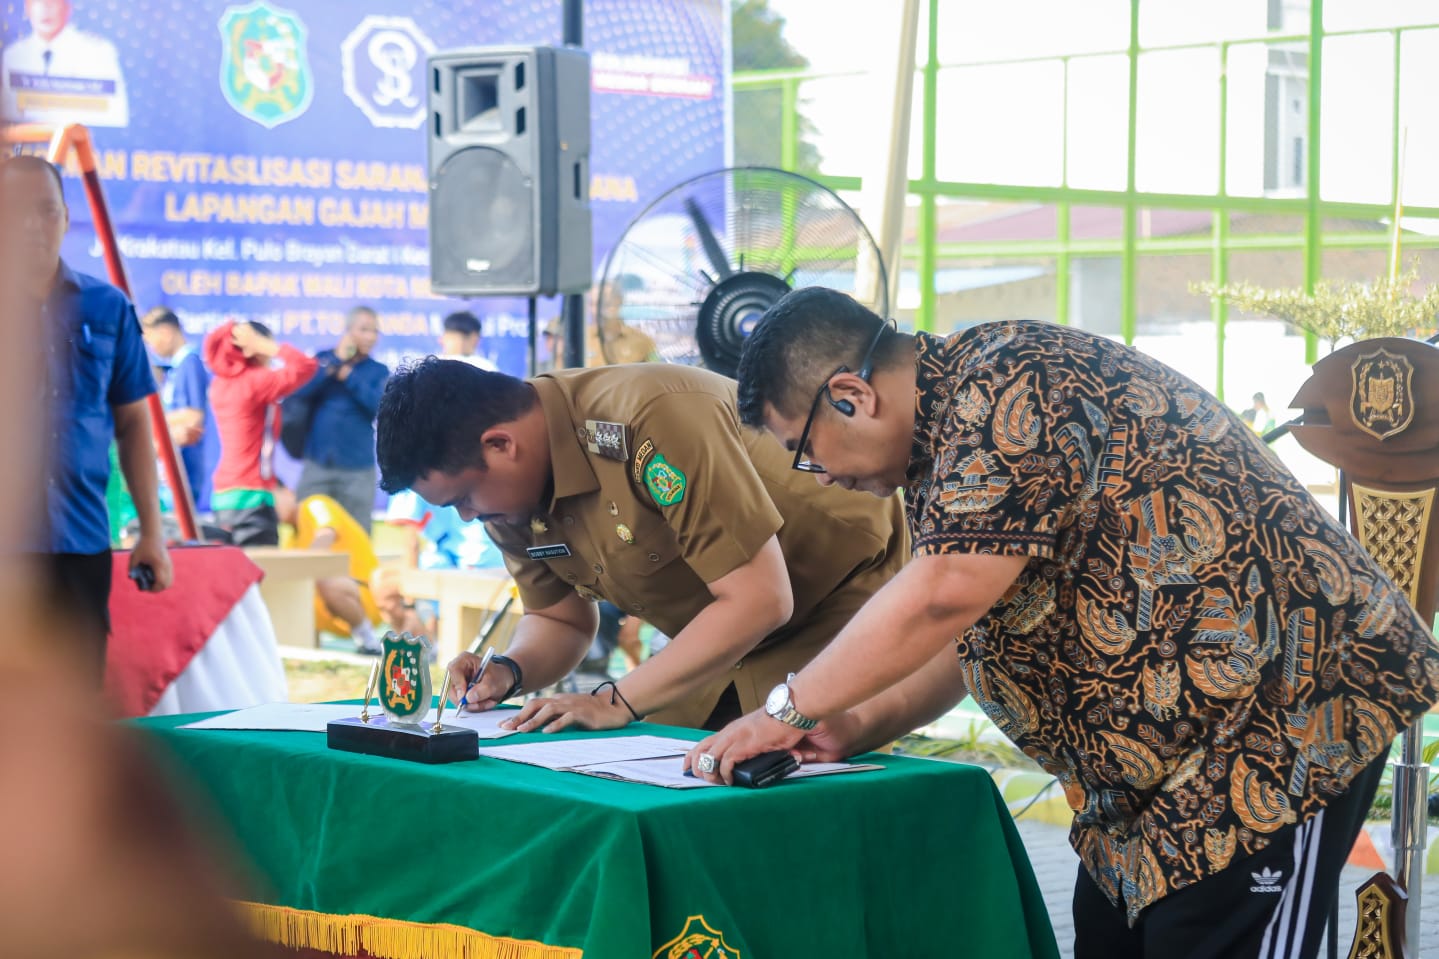 Wali Kota Medan Resmikan Lapangan Gajah Mada